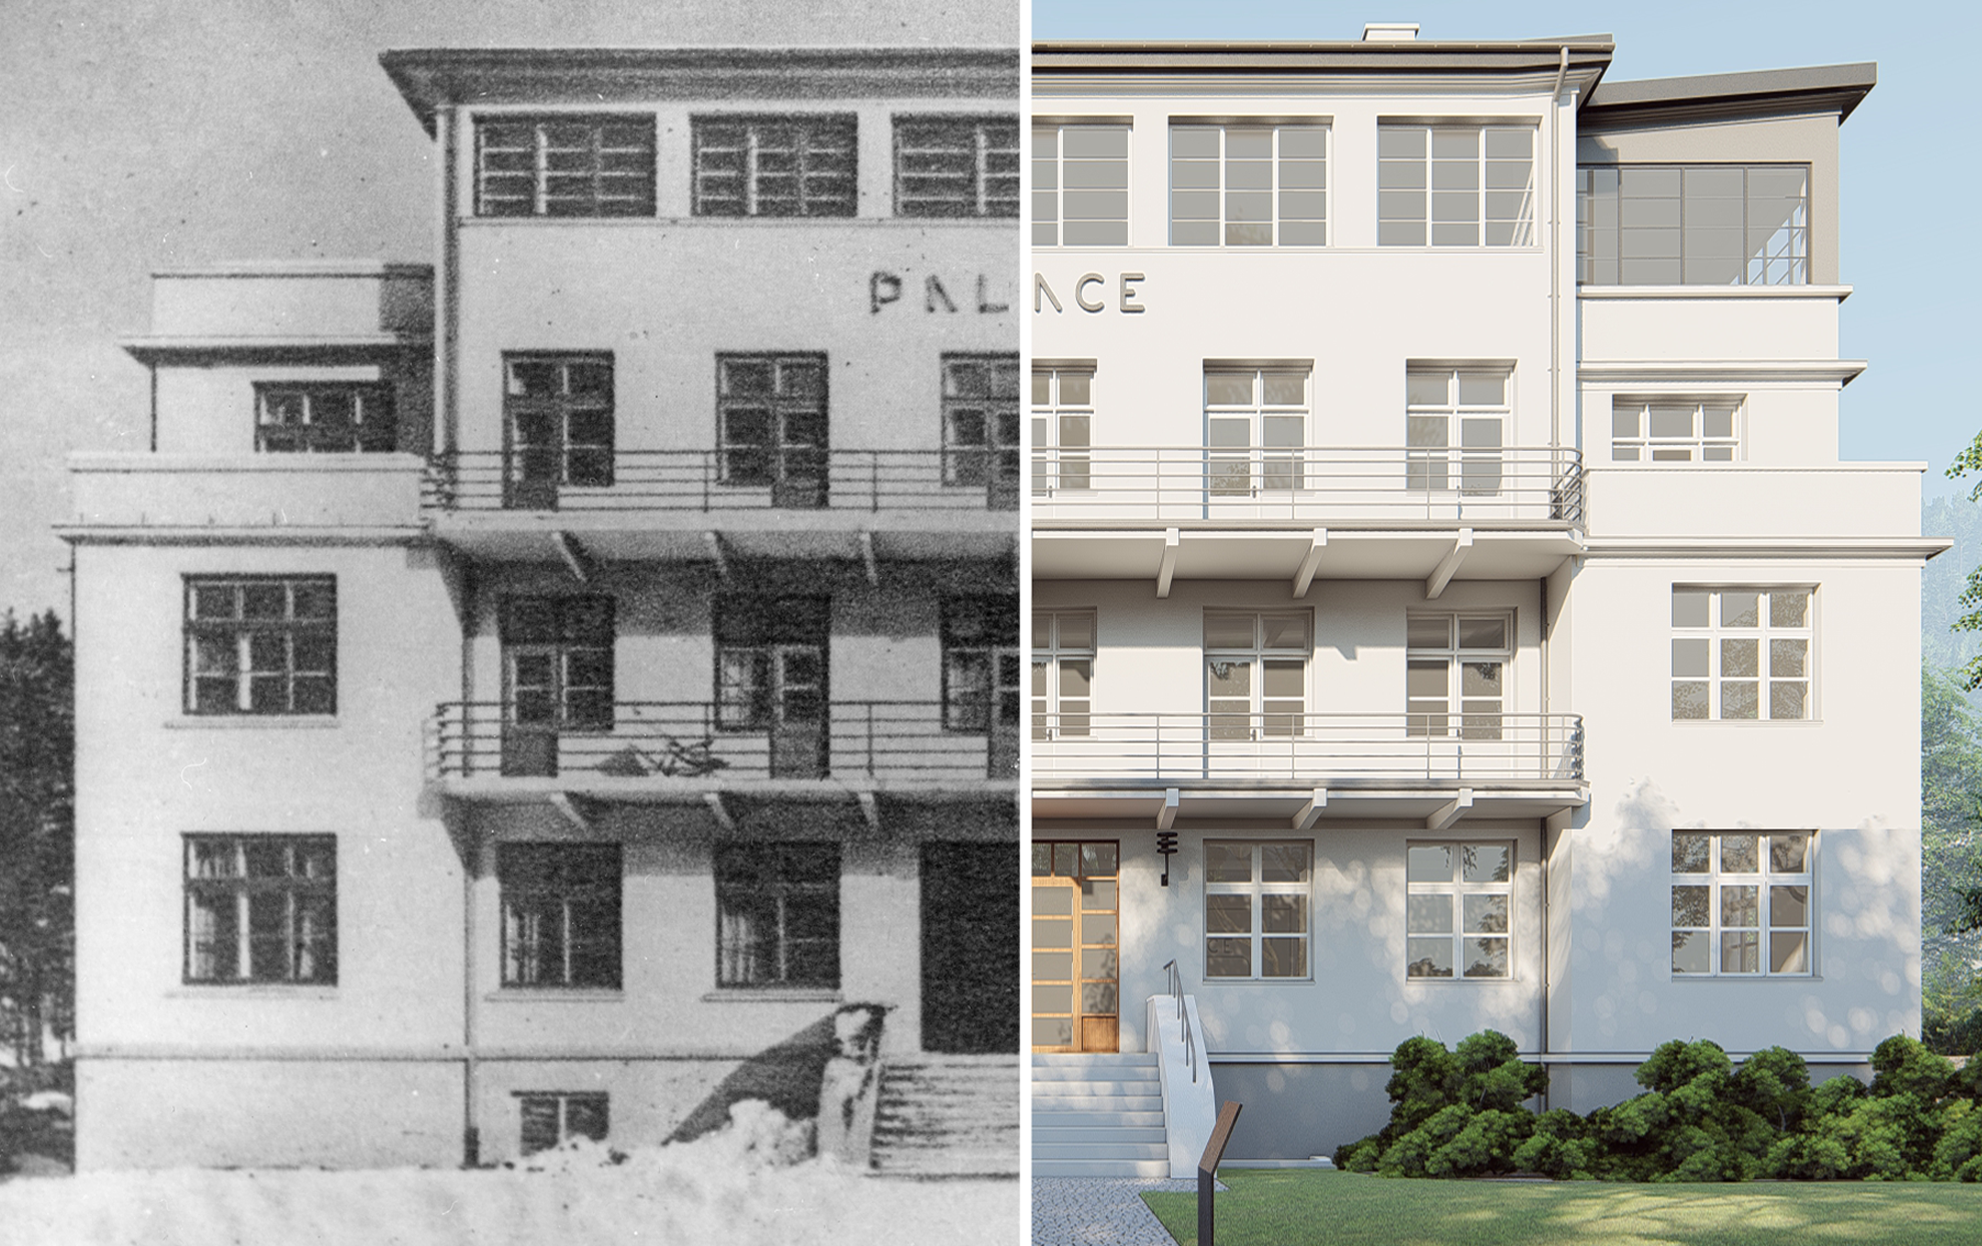 Budynek Palace, z lewej strony stare, czarno-białe zdjęcie, z prawej koncepcja wyremontowanego nowego budynku